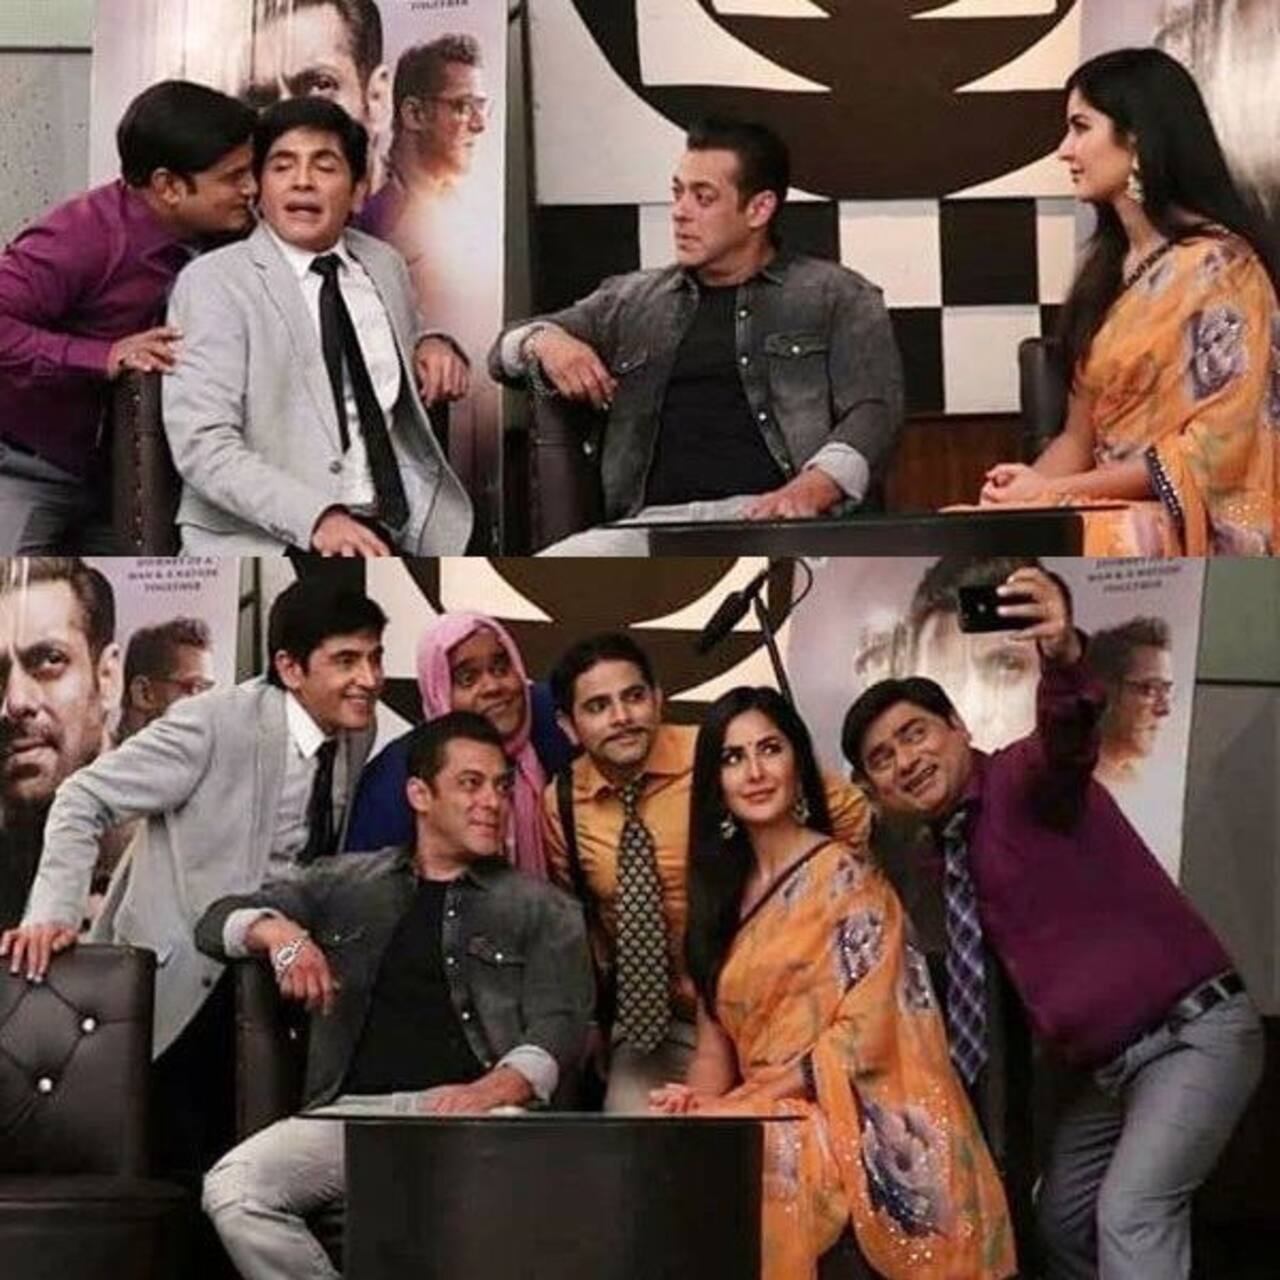 Salman Khan - Katrina Kaif promote Bharat on Bhabhi Ji Ghar Par Hain sets with co-star Aasif Sheikh - view picsn